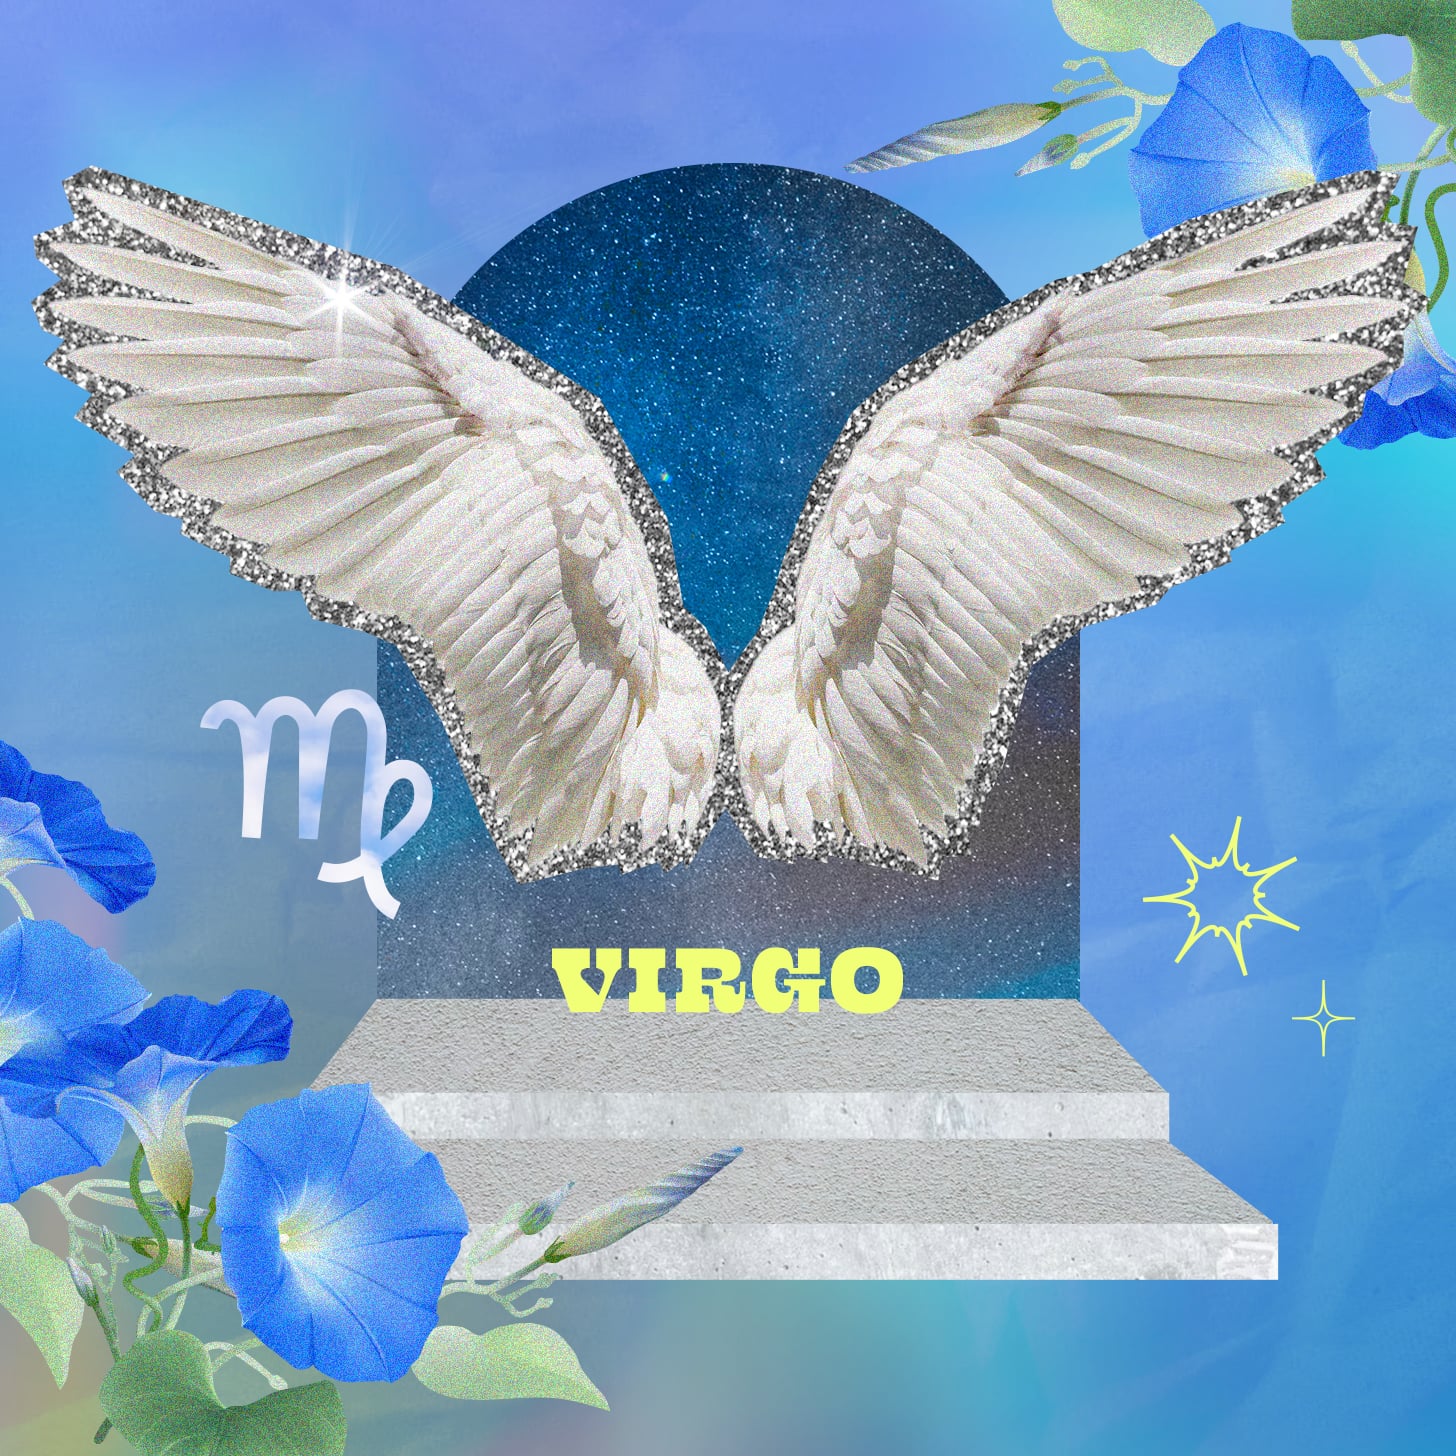 Virgo weekly horoscope for September 4, 2022